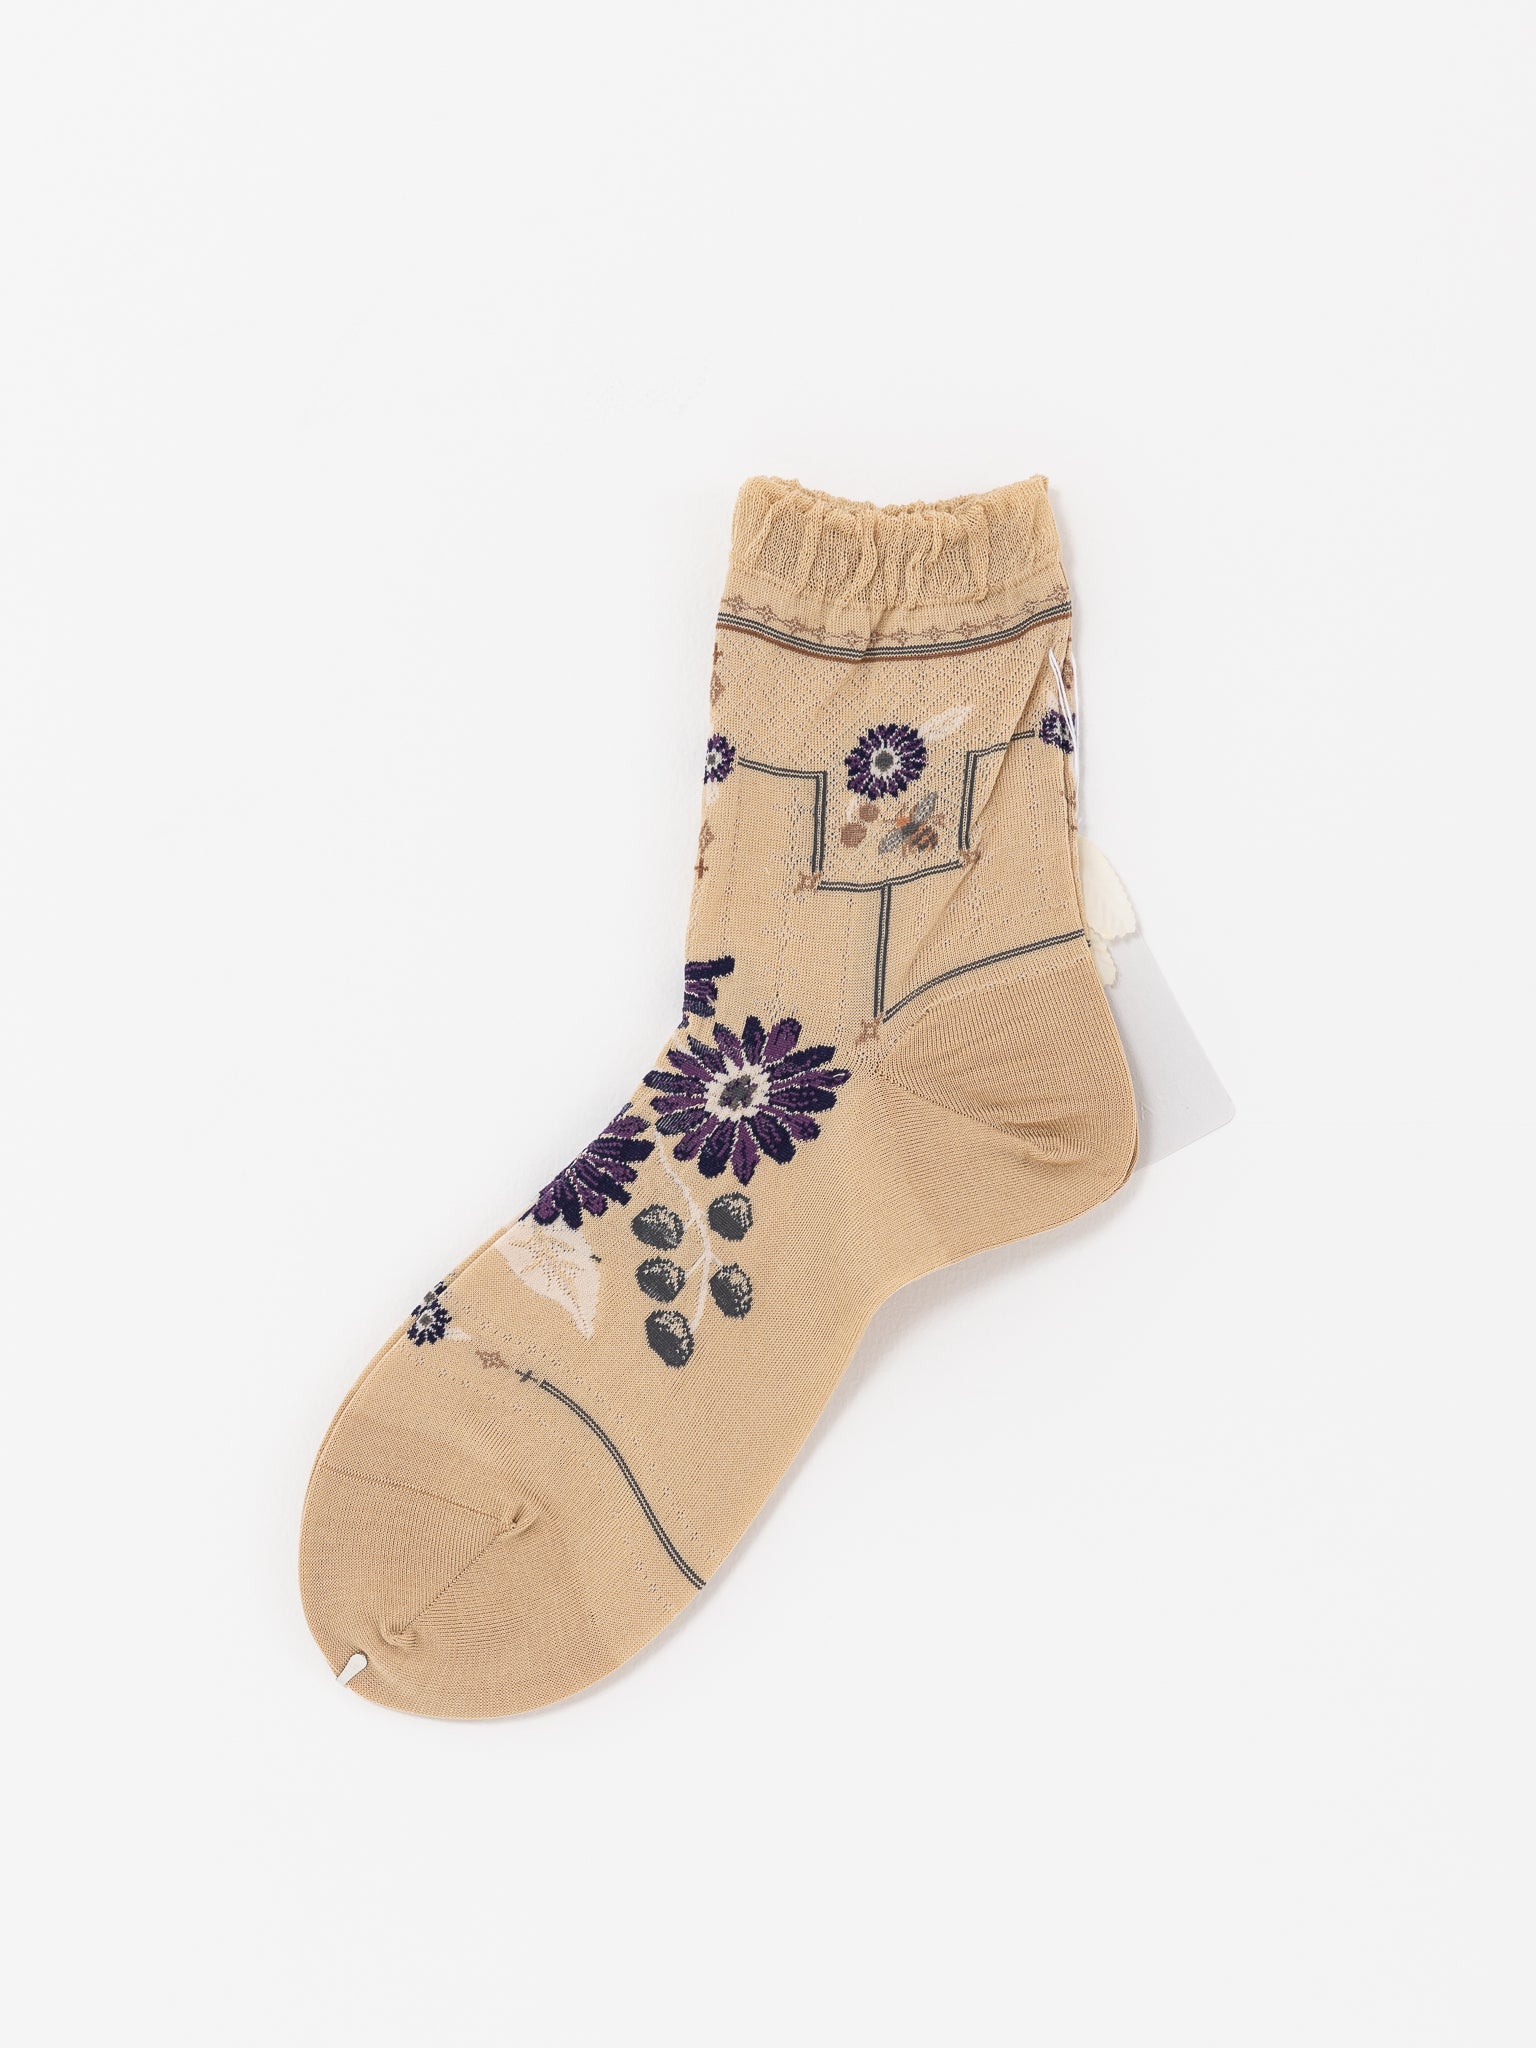 Antipast Gerbera Ankle Socks, Beige - Worthwhile